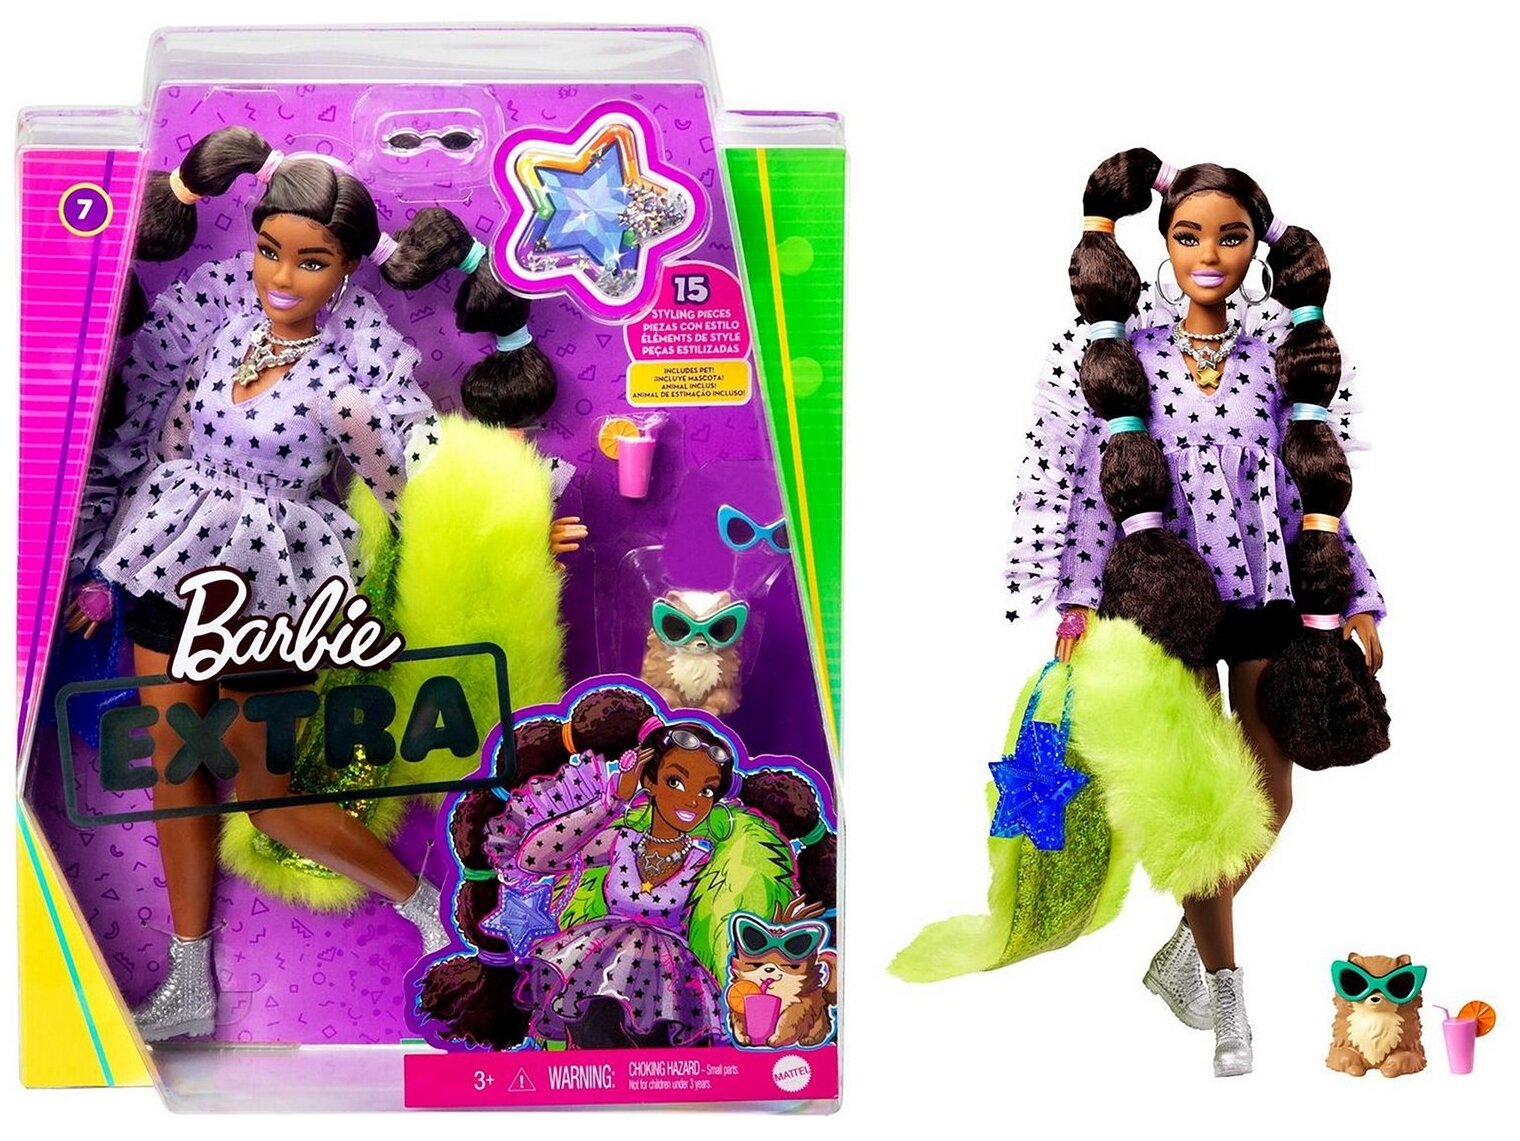 Barbie Кукла Экстра с переплетенными резинками хвостиками - фото №7